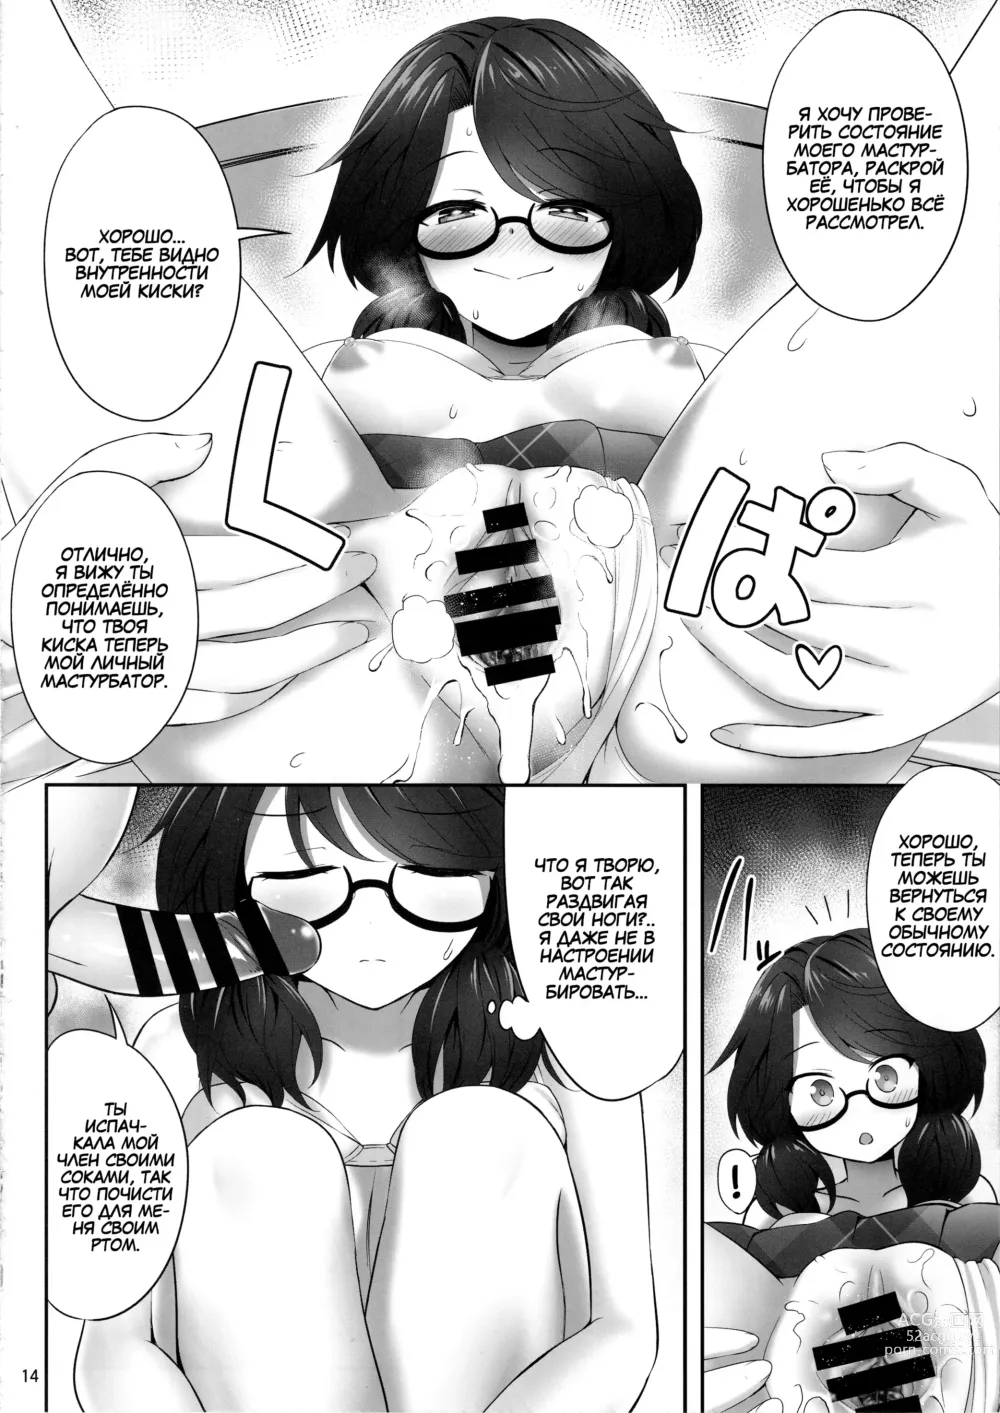 Page 13 of doujinshi Usami Sumireko Saiminbon 2